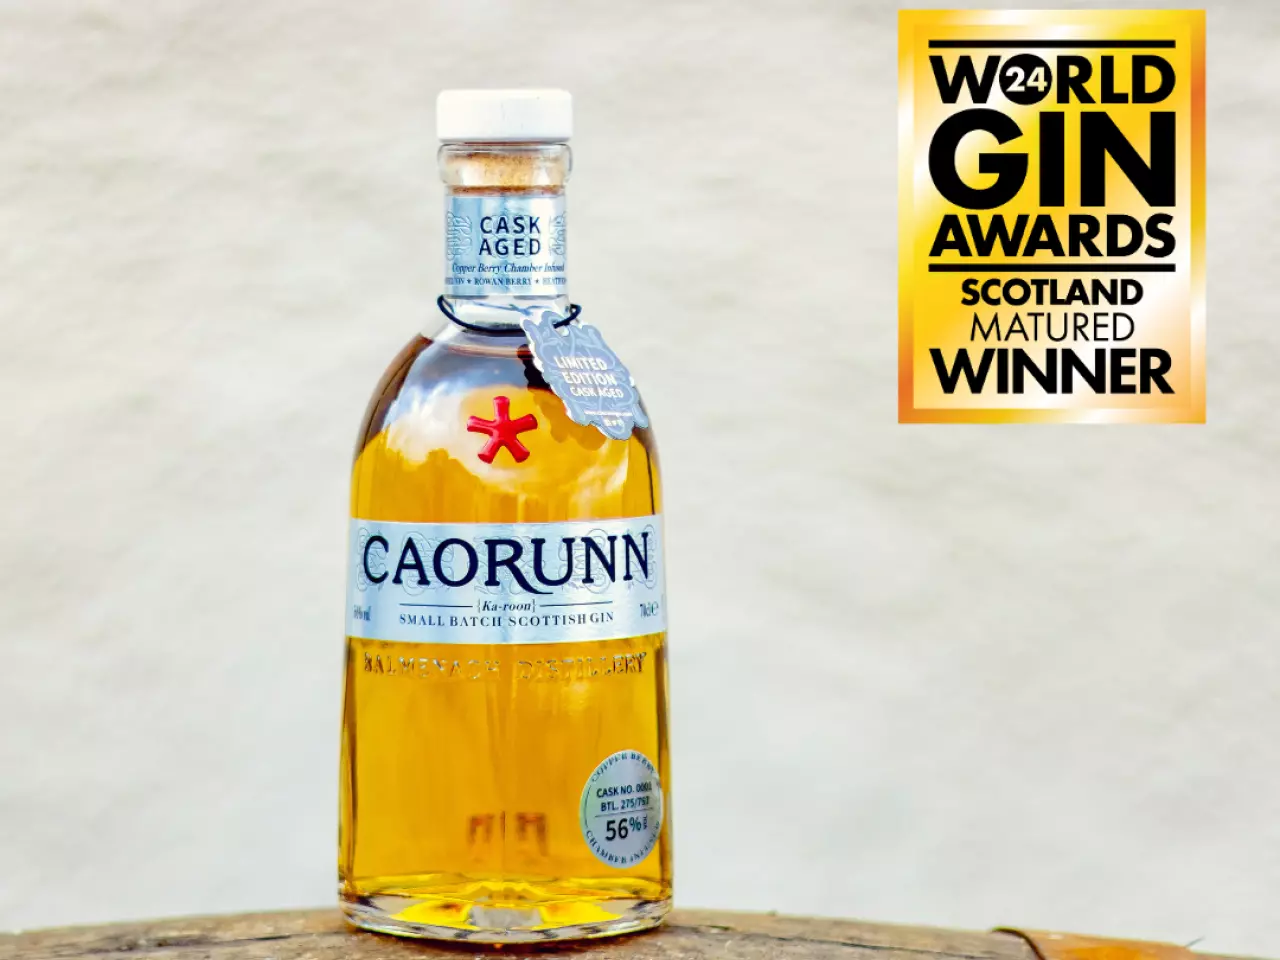 Caorunn Cask Aged Gin Award